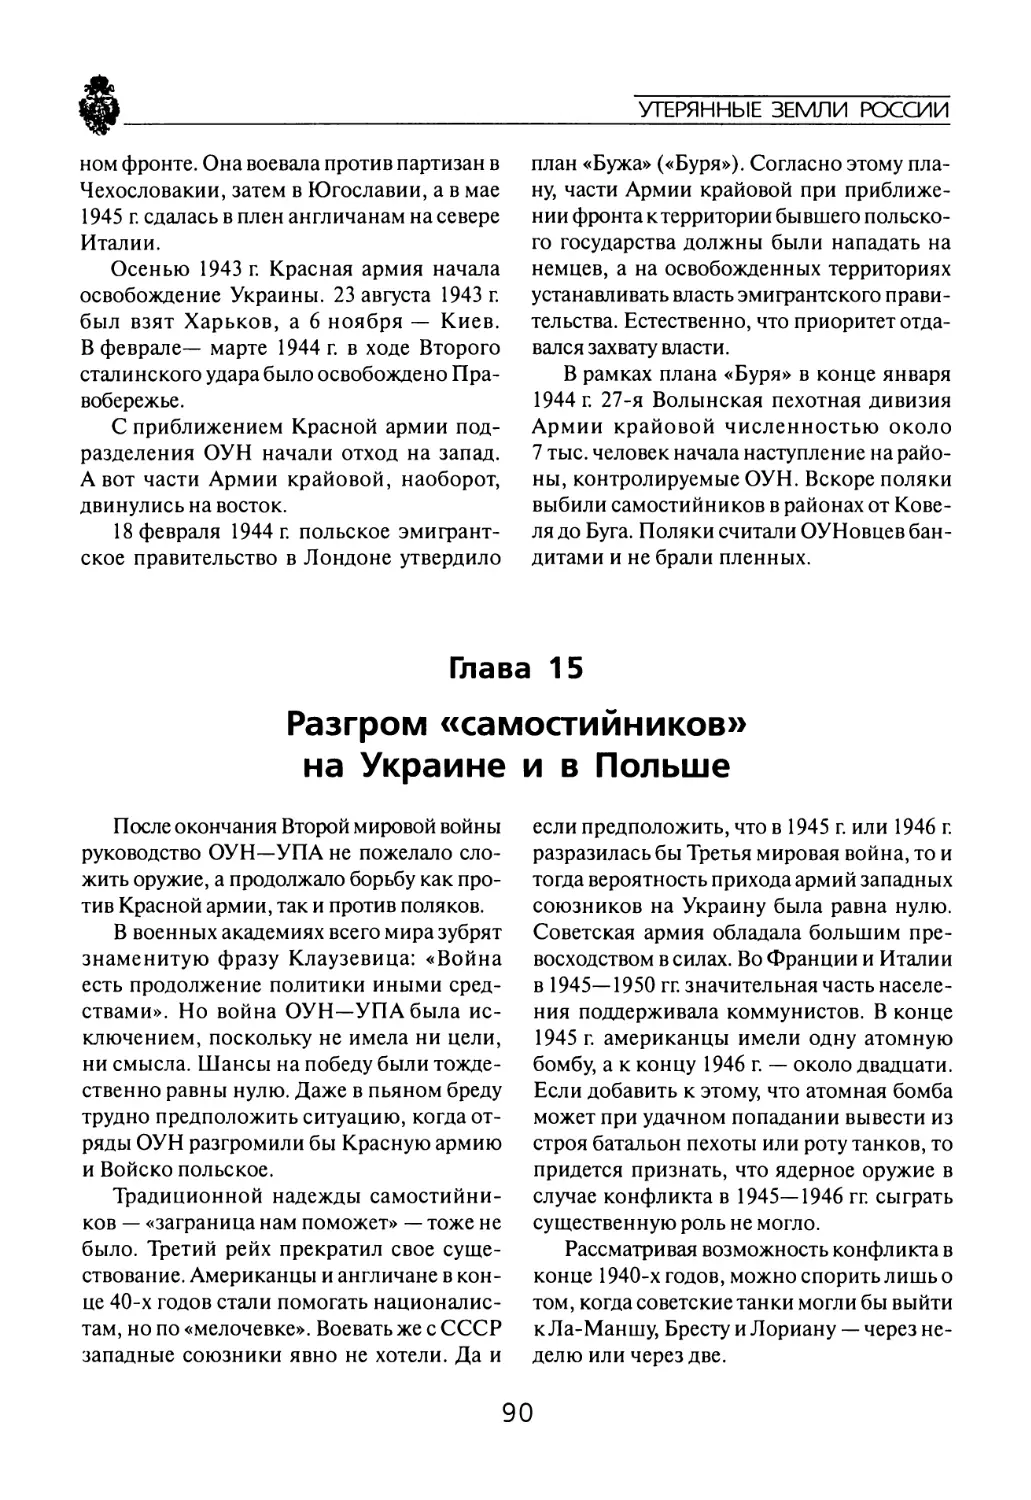 Глава  15 Разгром  «самостийников» на  Украине  и  в  Польше